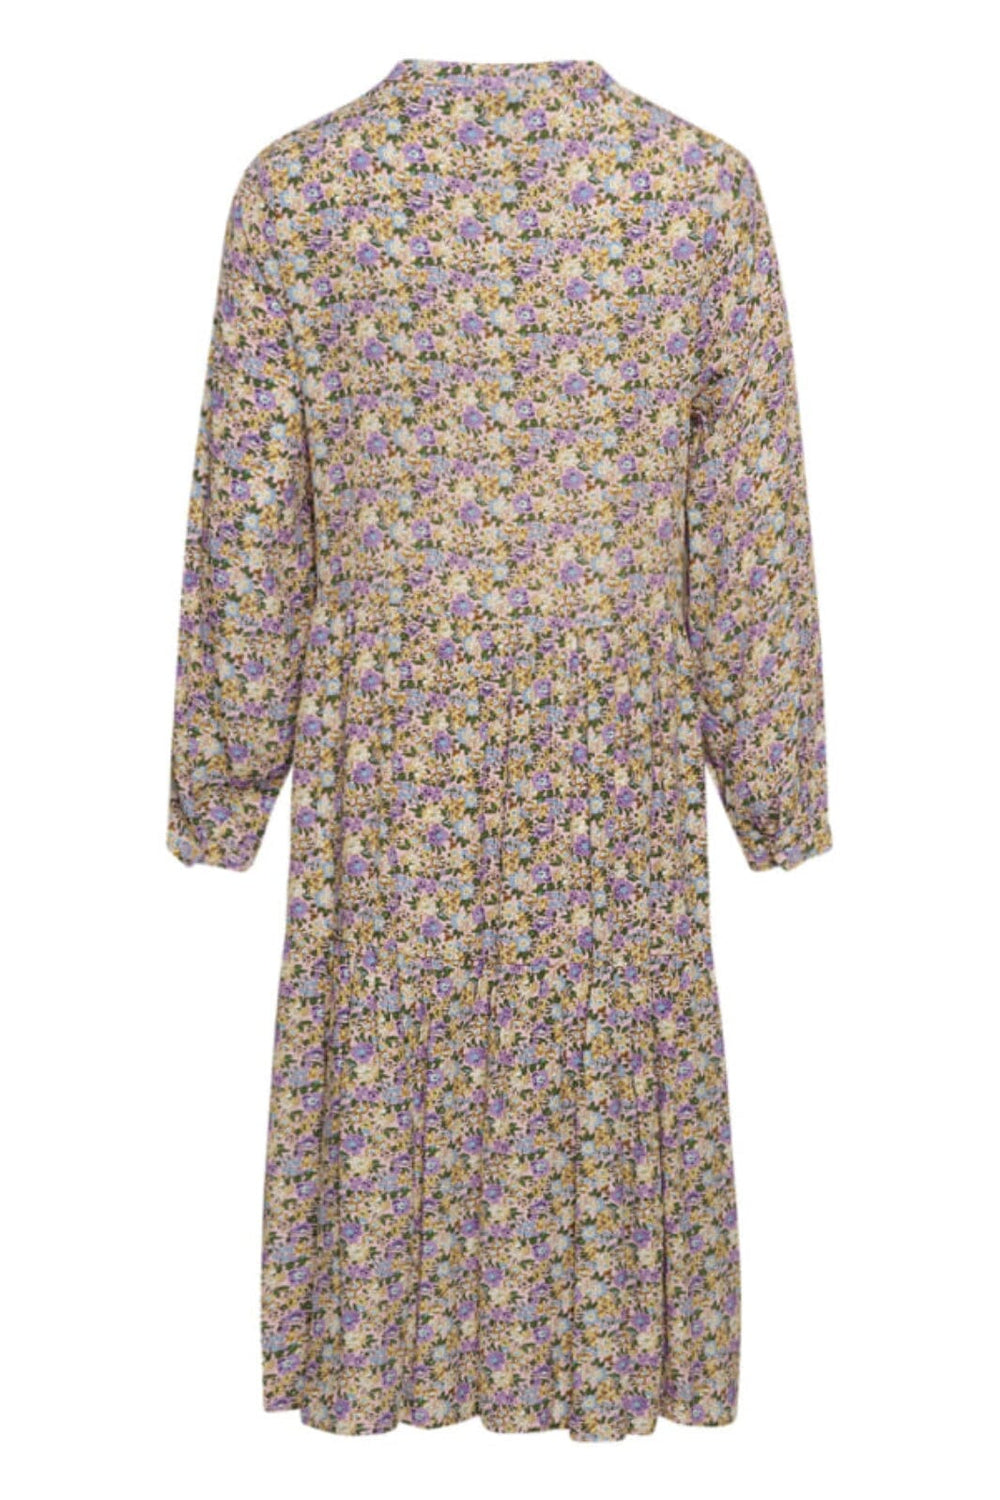 Noella - Rita Lipe Dress - Lavender Flower Kjoler 